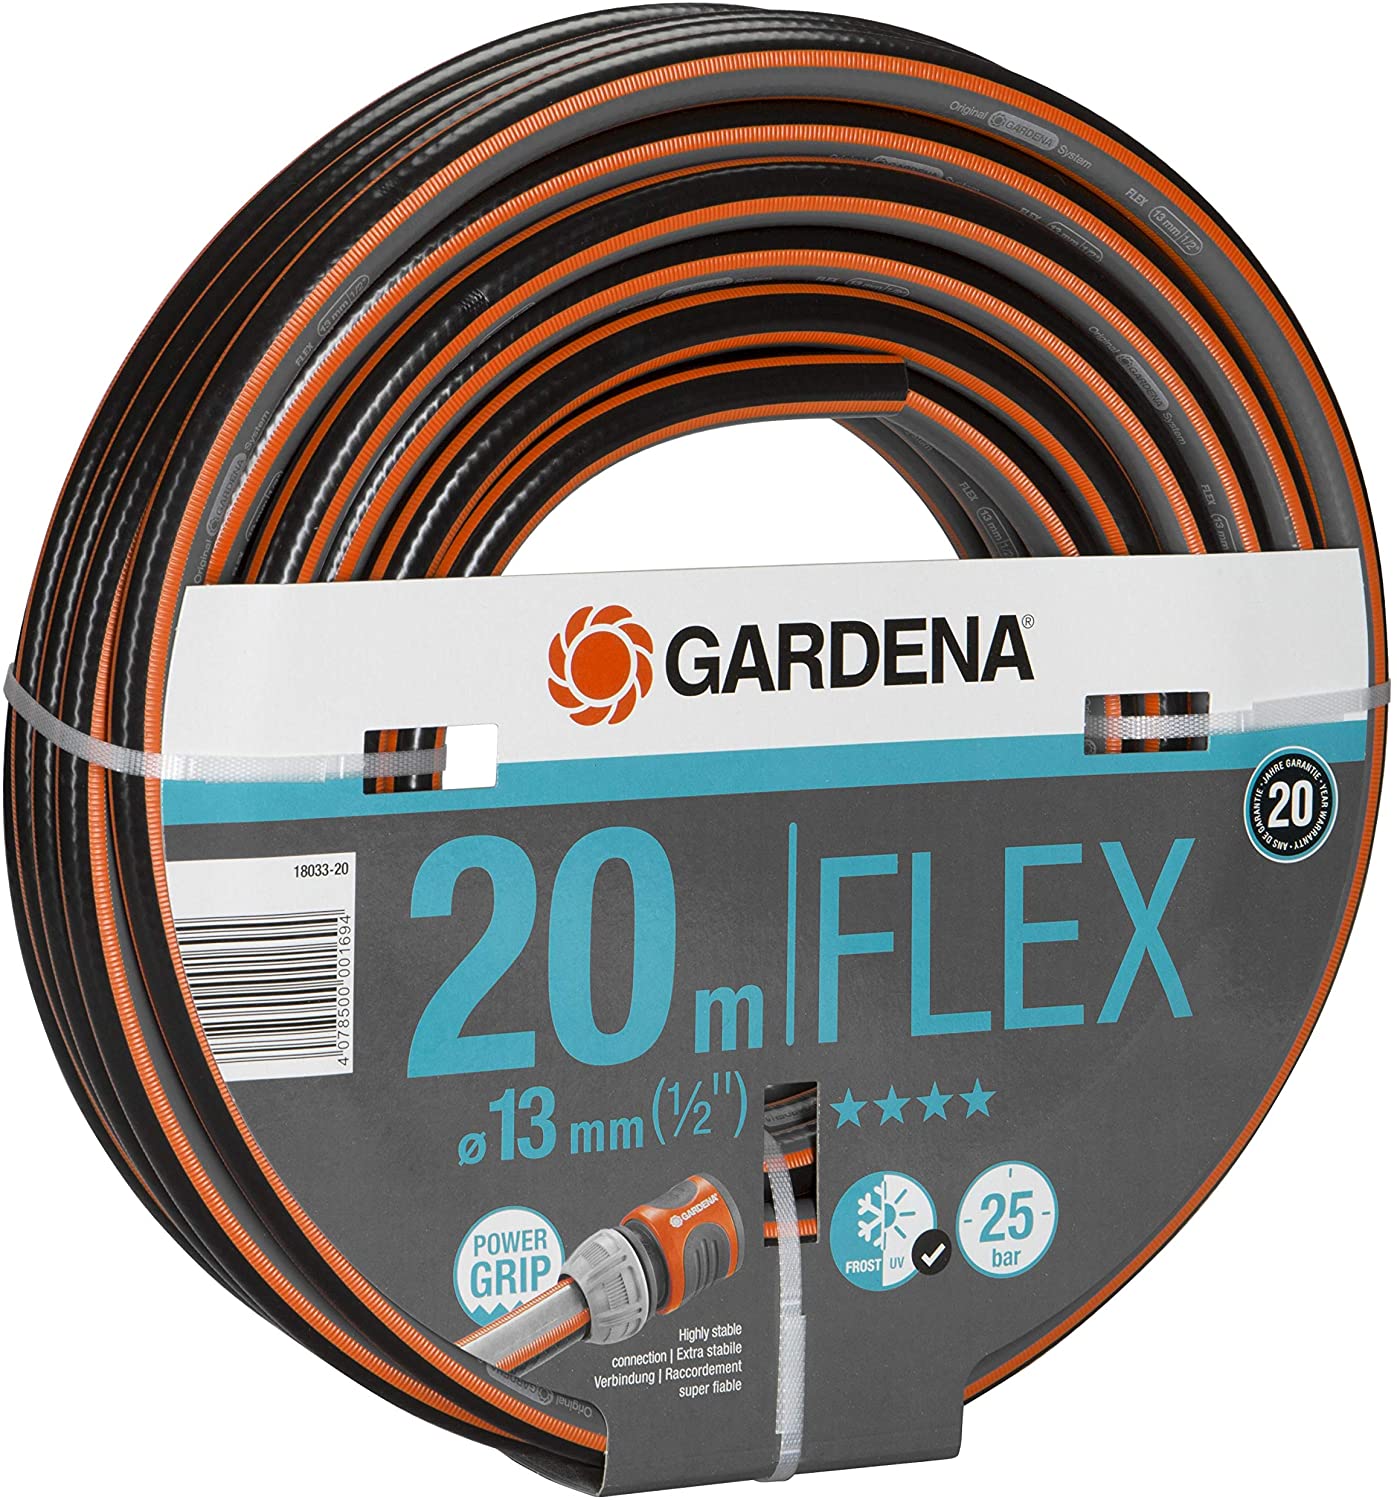 Gardena Comfort FLEX Schlauch 13 mm (1/2"), 20 m Gardena